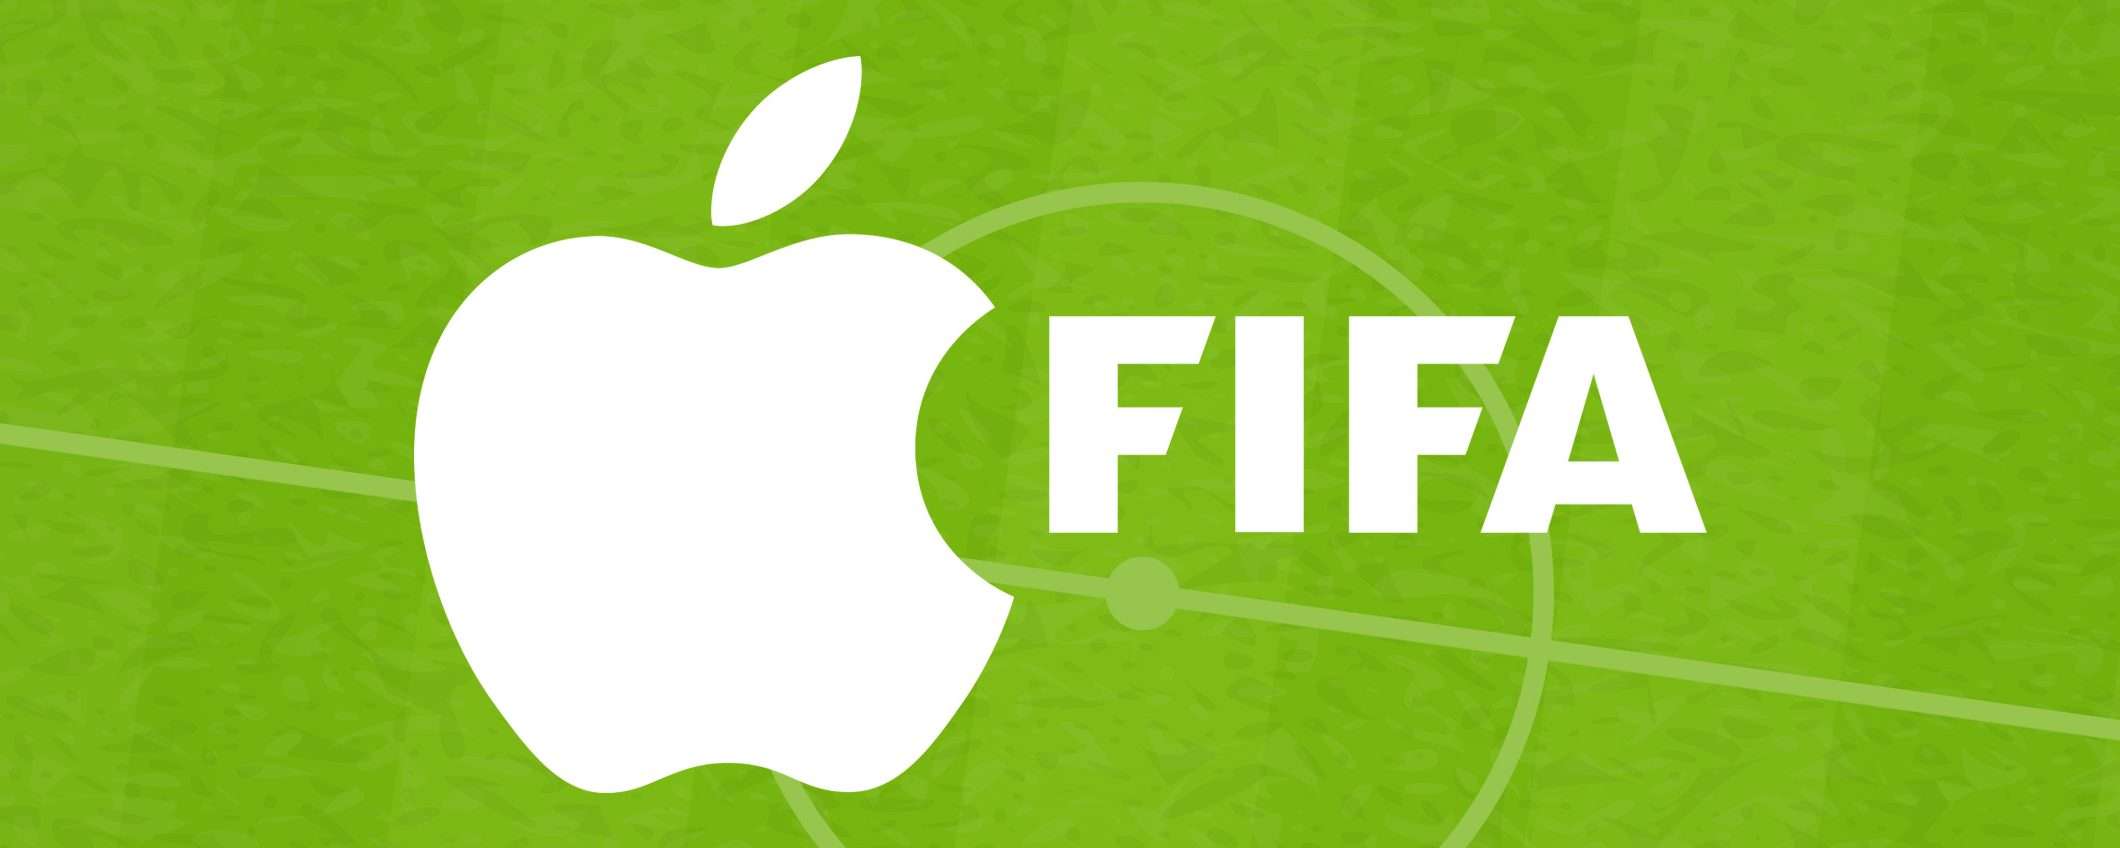 Coppa del mondo per club FIFA 2025: lo streaming ad Apple?